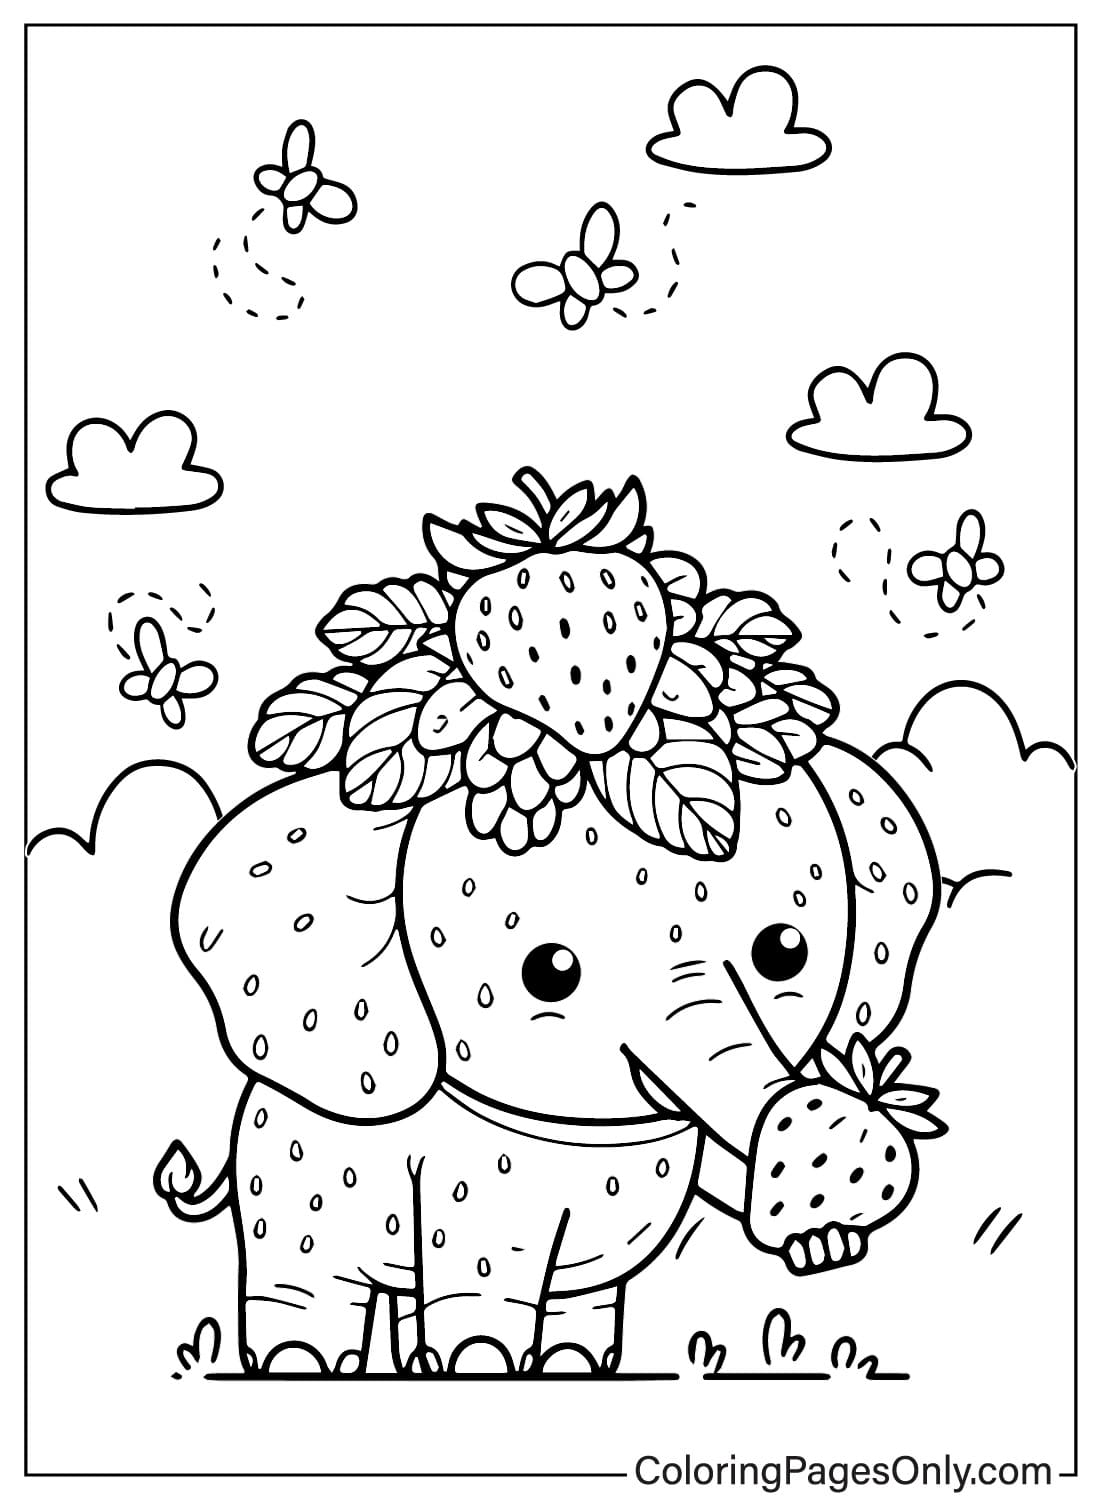 Página para colorear de Elefante Fresa Bebé de Elefante Fresa